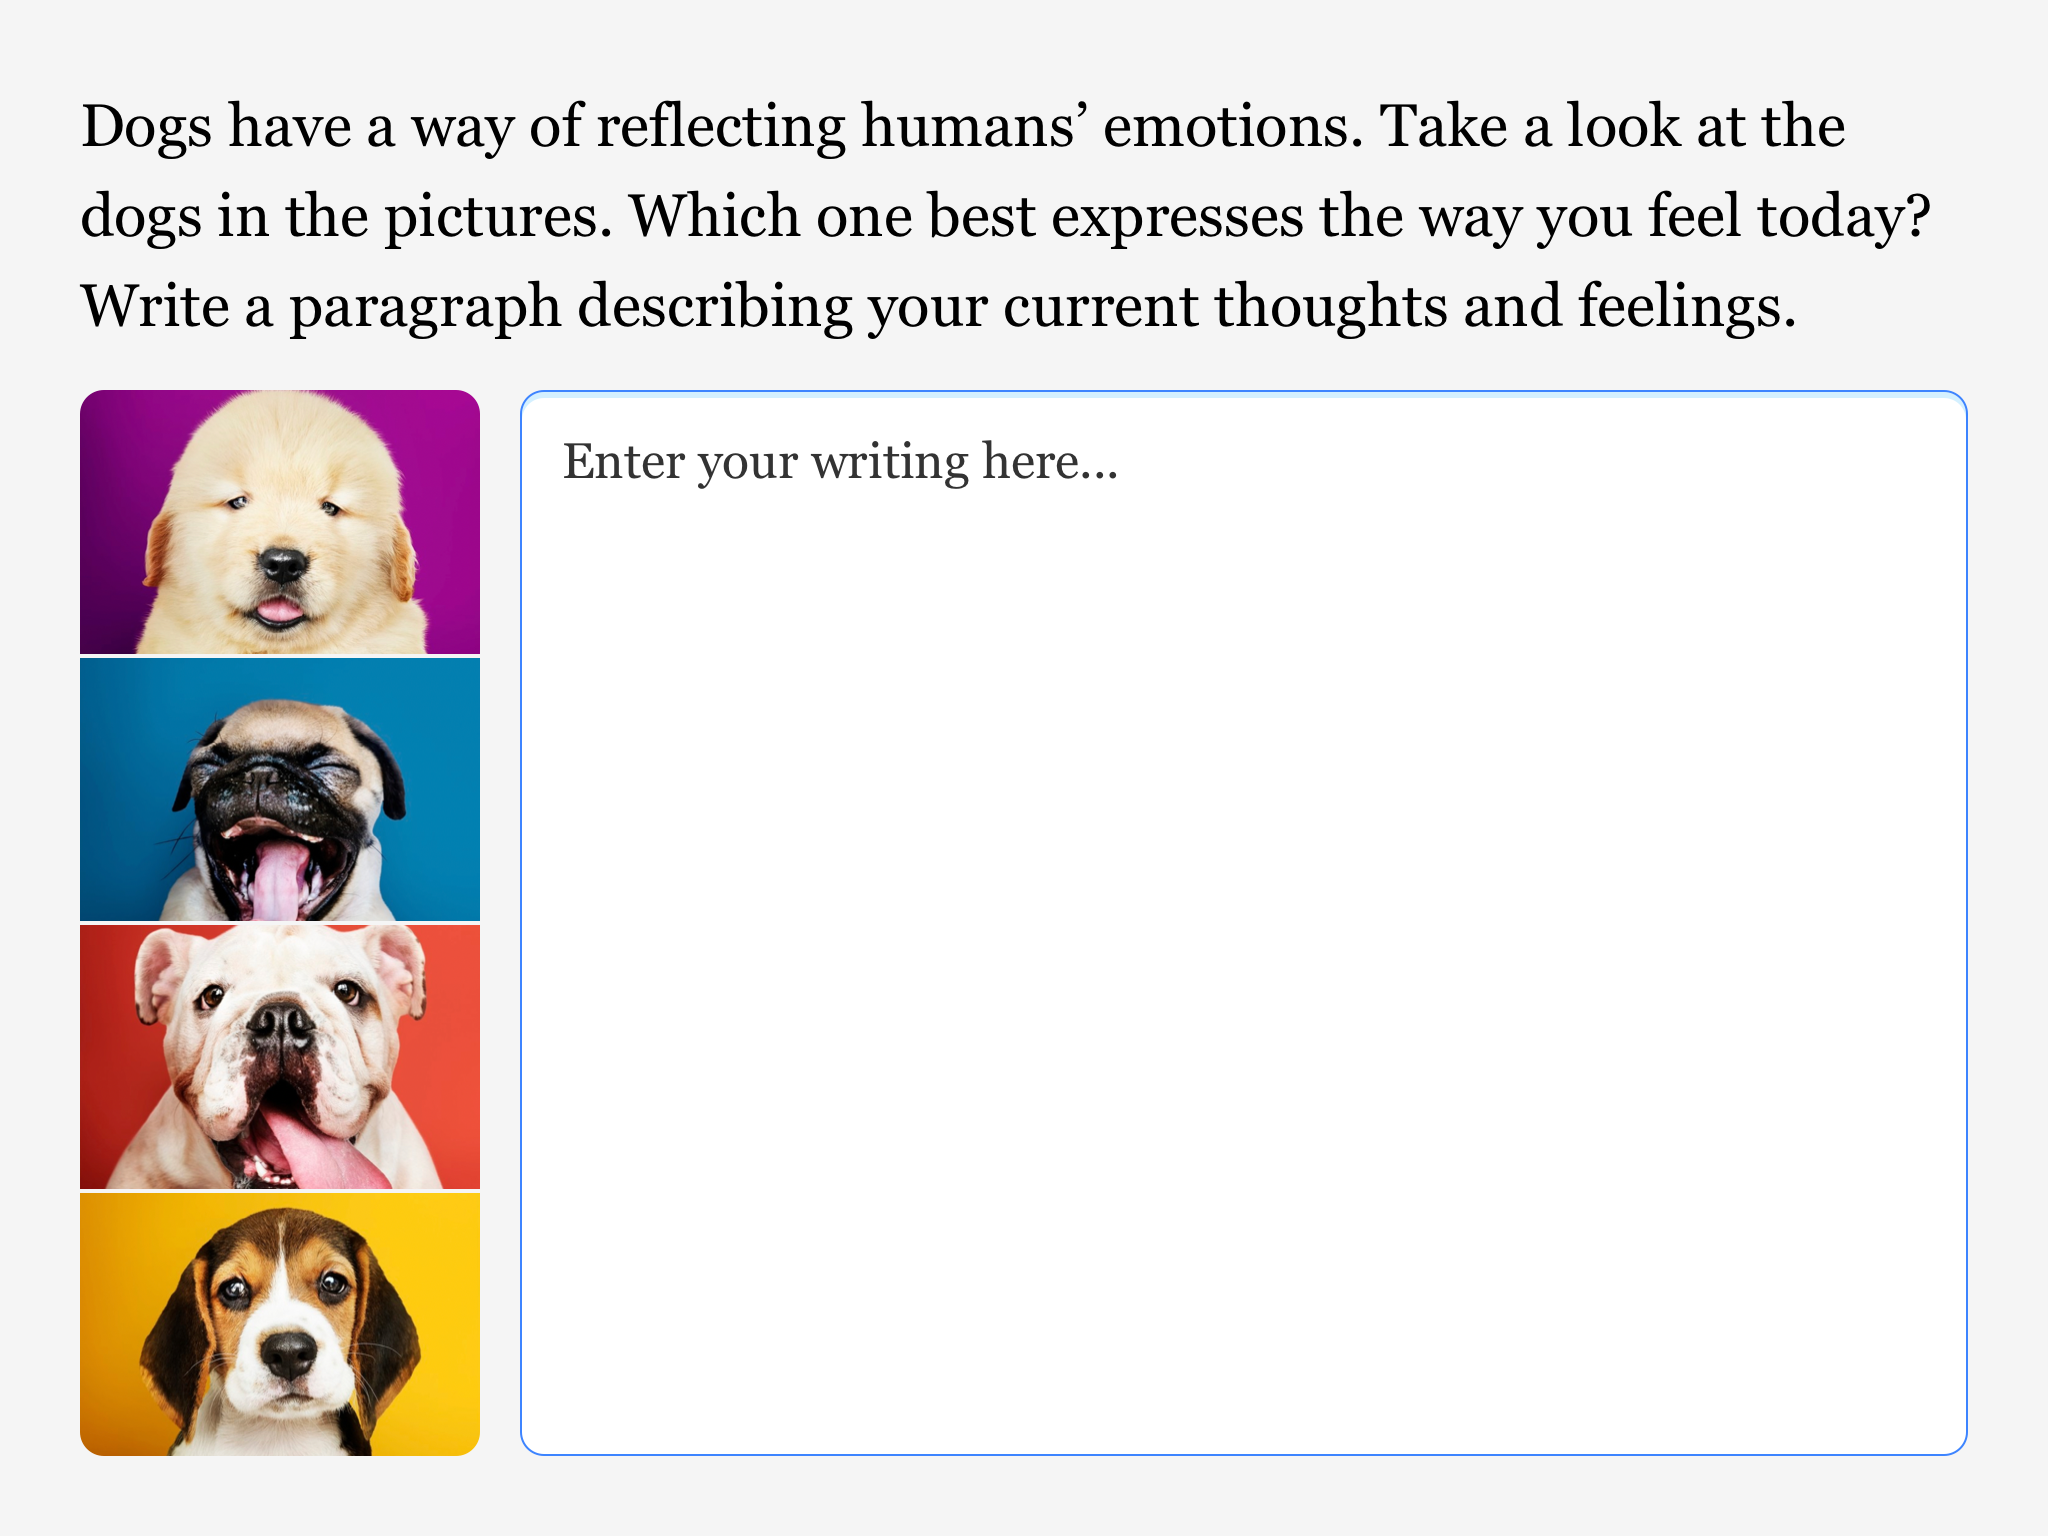 学生们用一个大文本框来回应以下提示：“狗有一种反映人类情绪的方式。看看图片中的狗。哪一只最能表达你今天的感受？写一段描述你当前的想法和感受。”